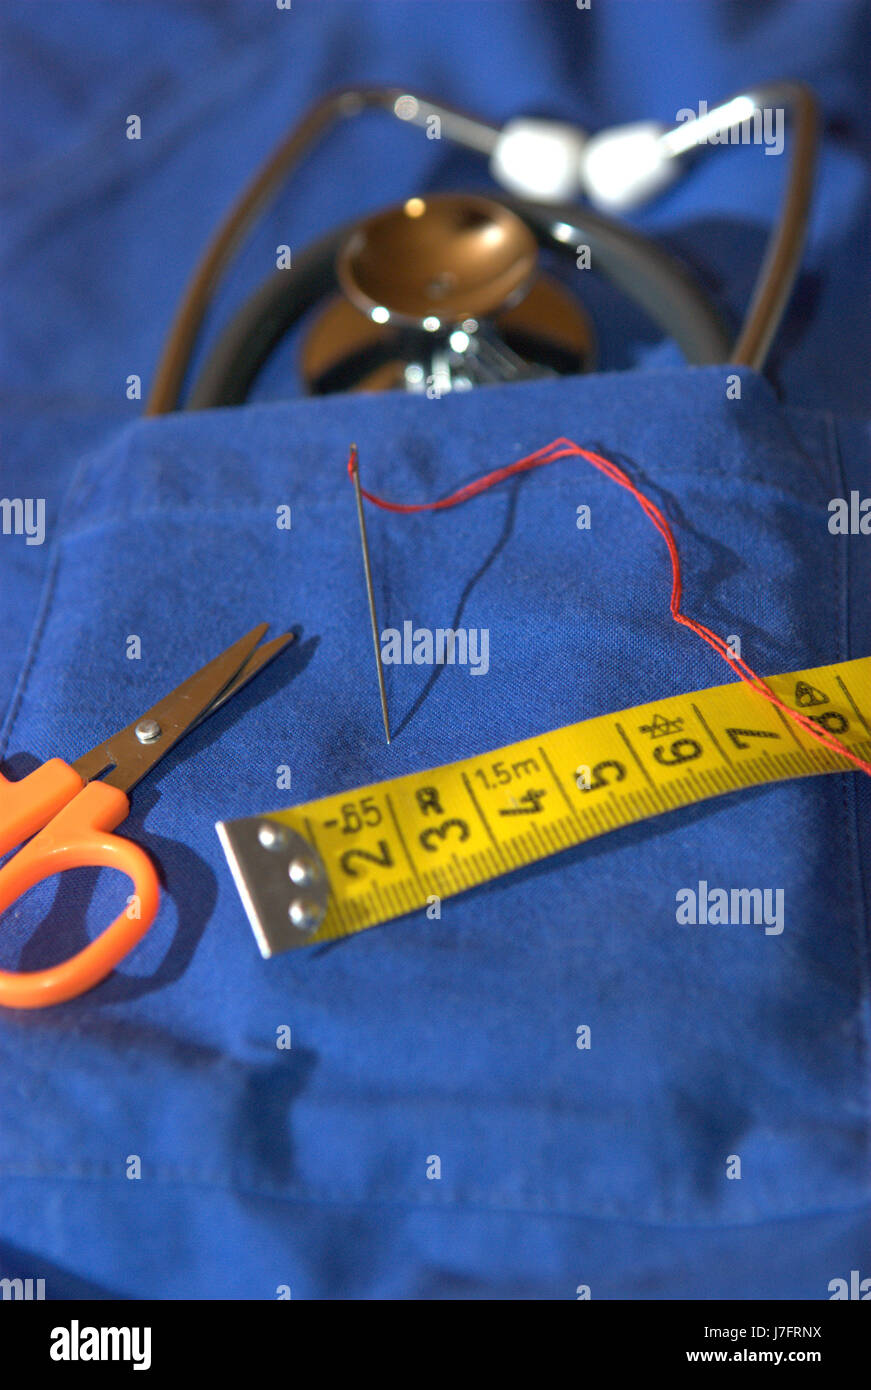 Médecin Médecin praticien médical infirmier sured vêtements mesure mesurée Banque D'Images